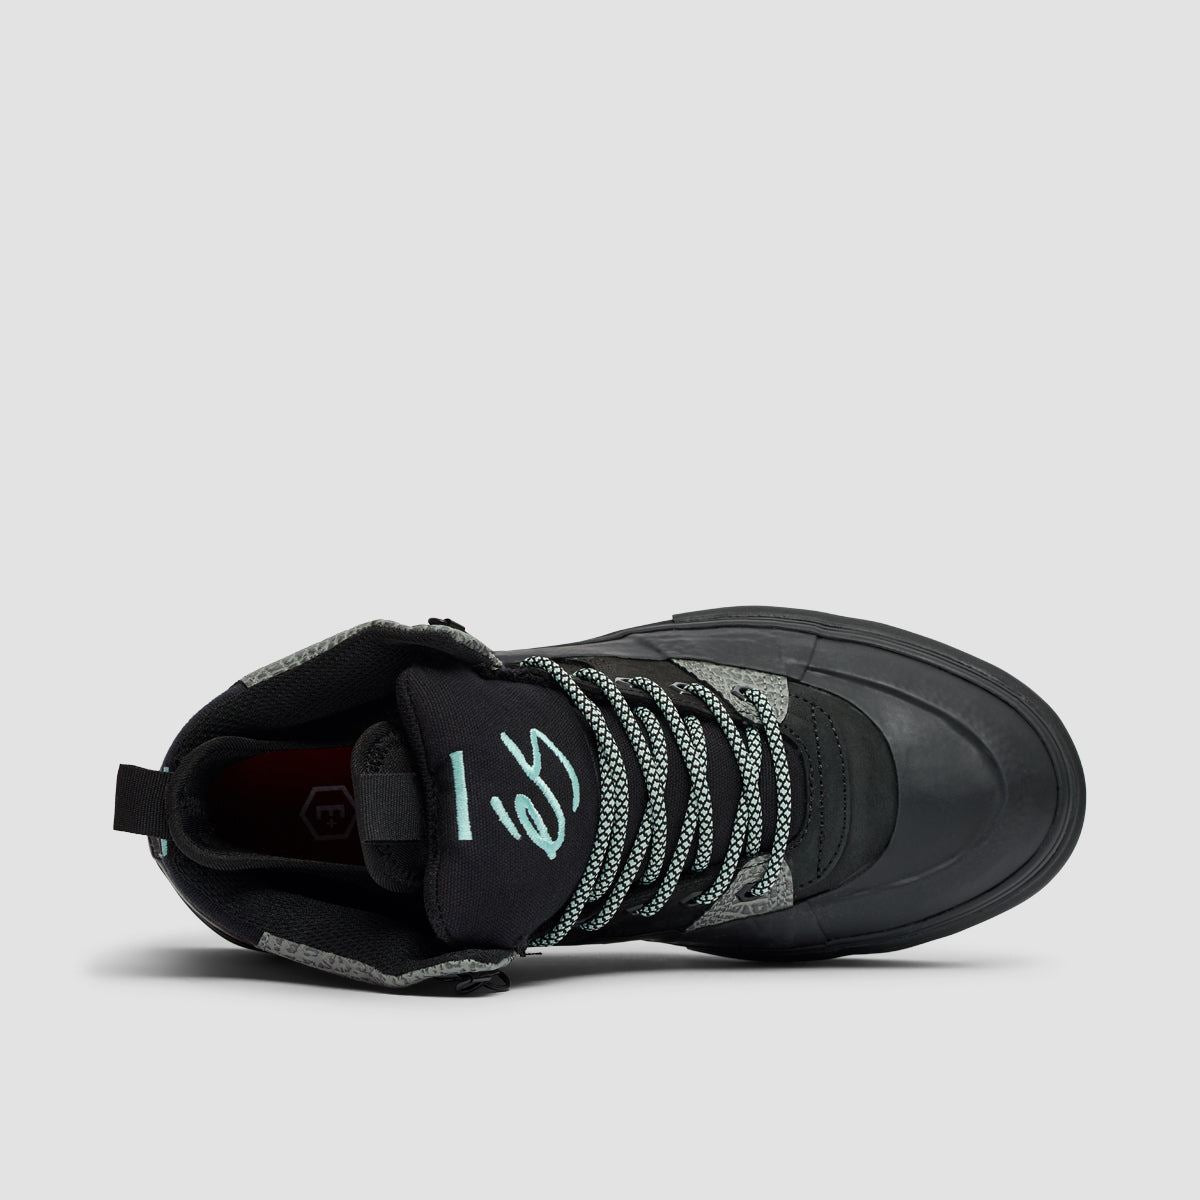 eS Accel Explorer Shoes - Black/Turquoise